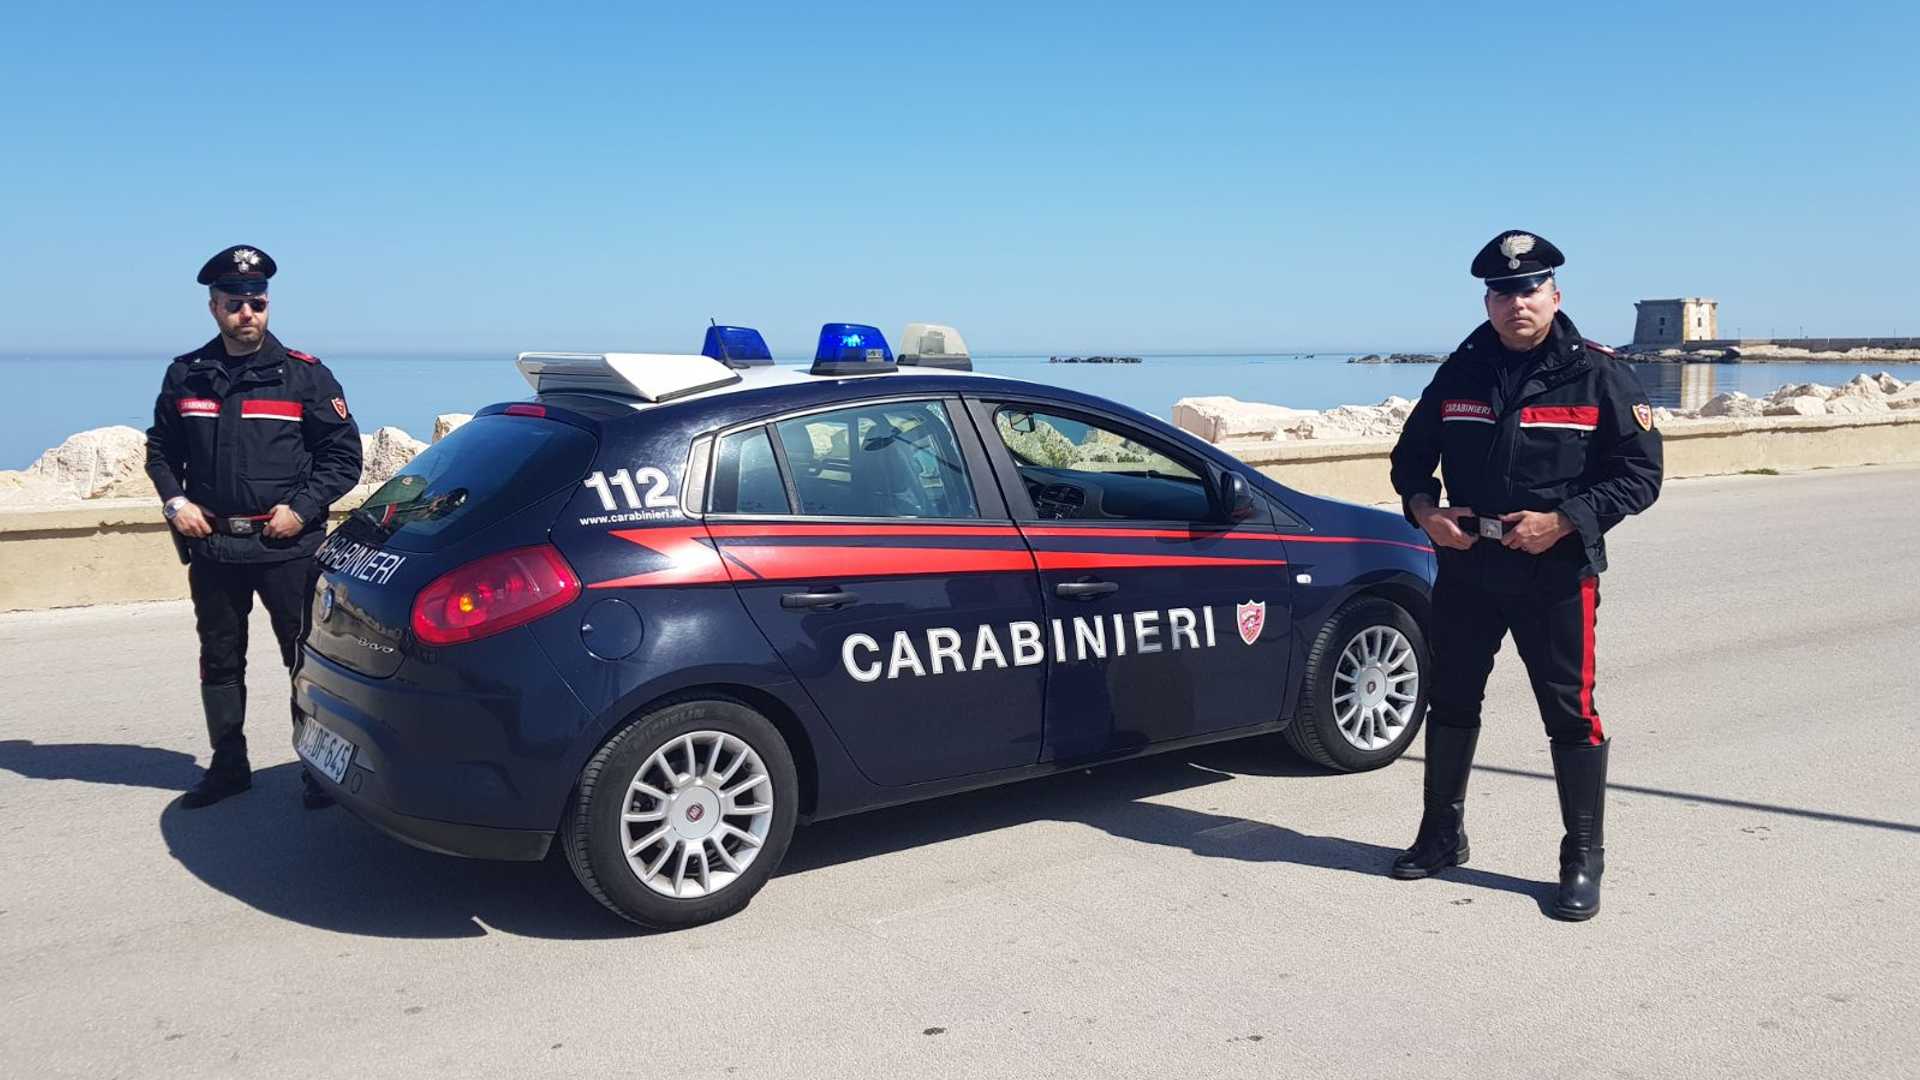 perchè l'auto dei carabinieri si chiama gazzella